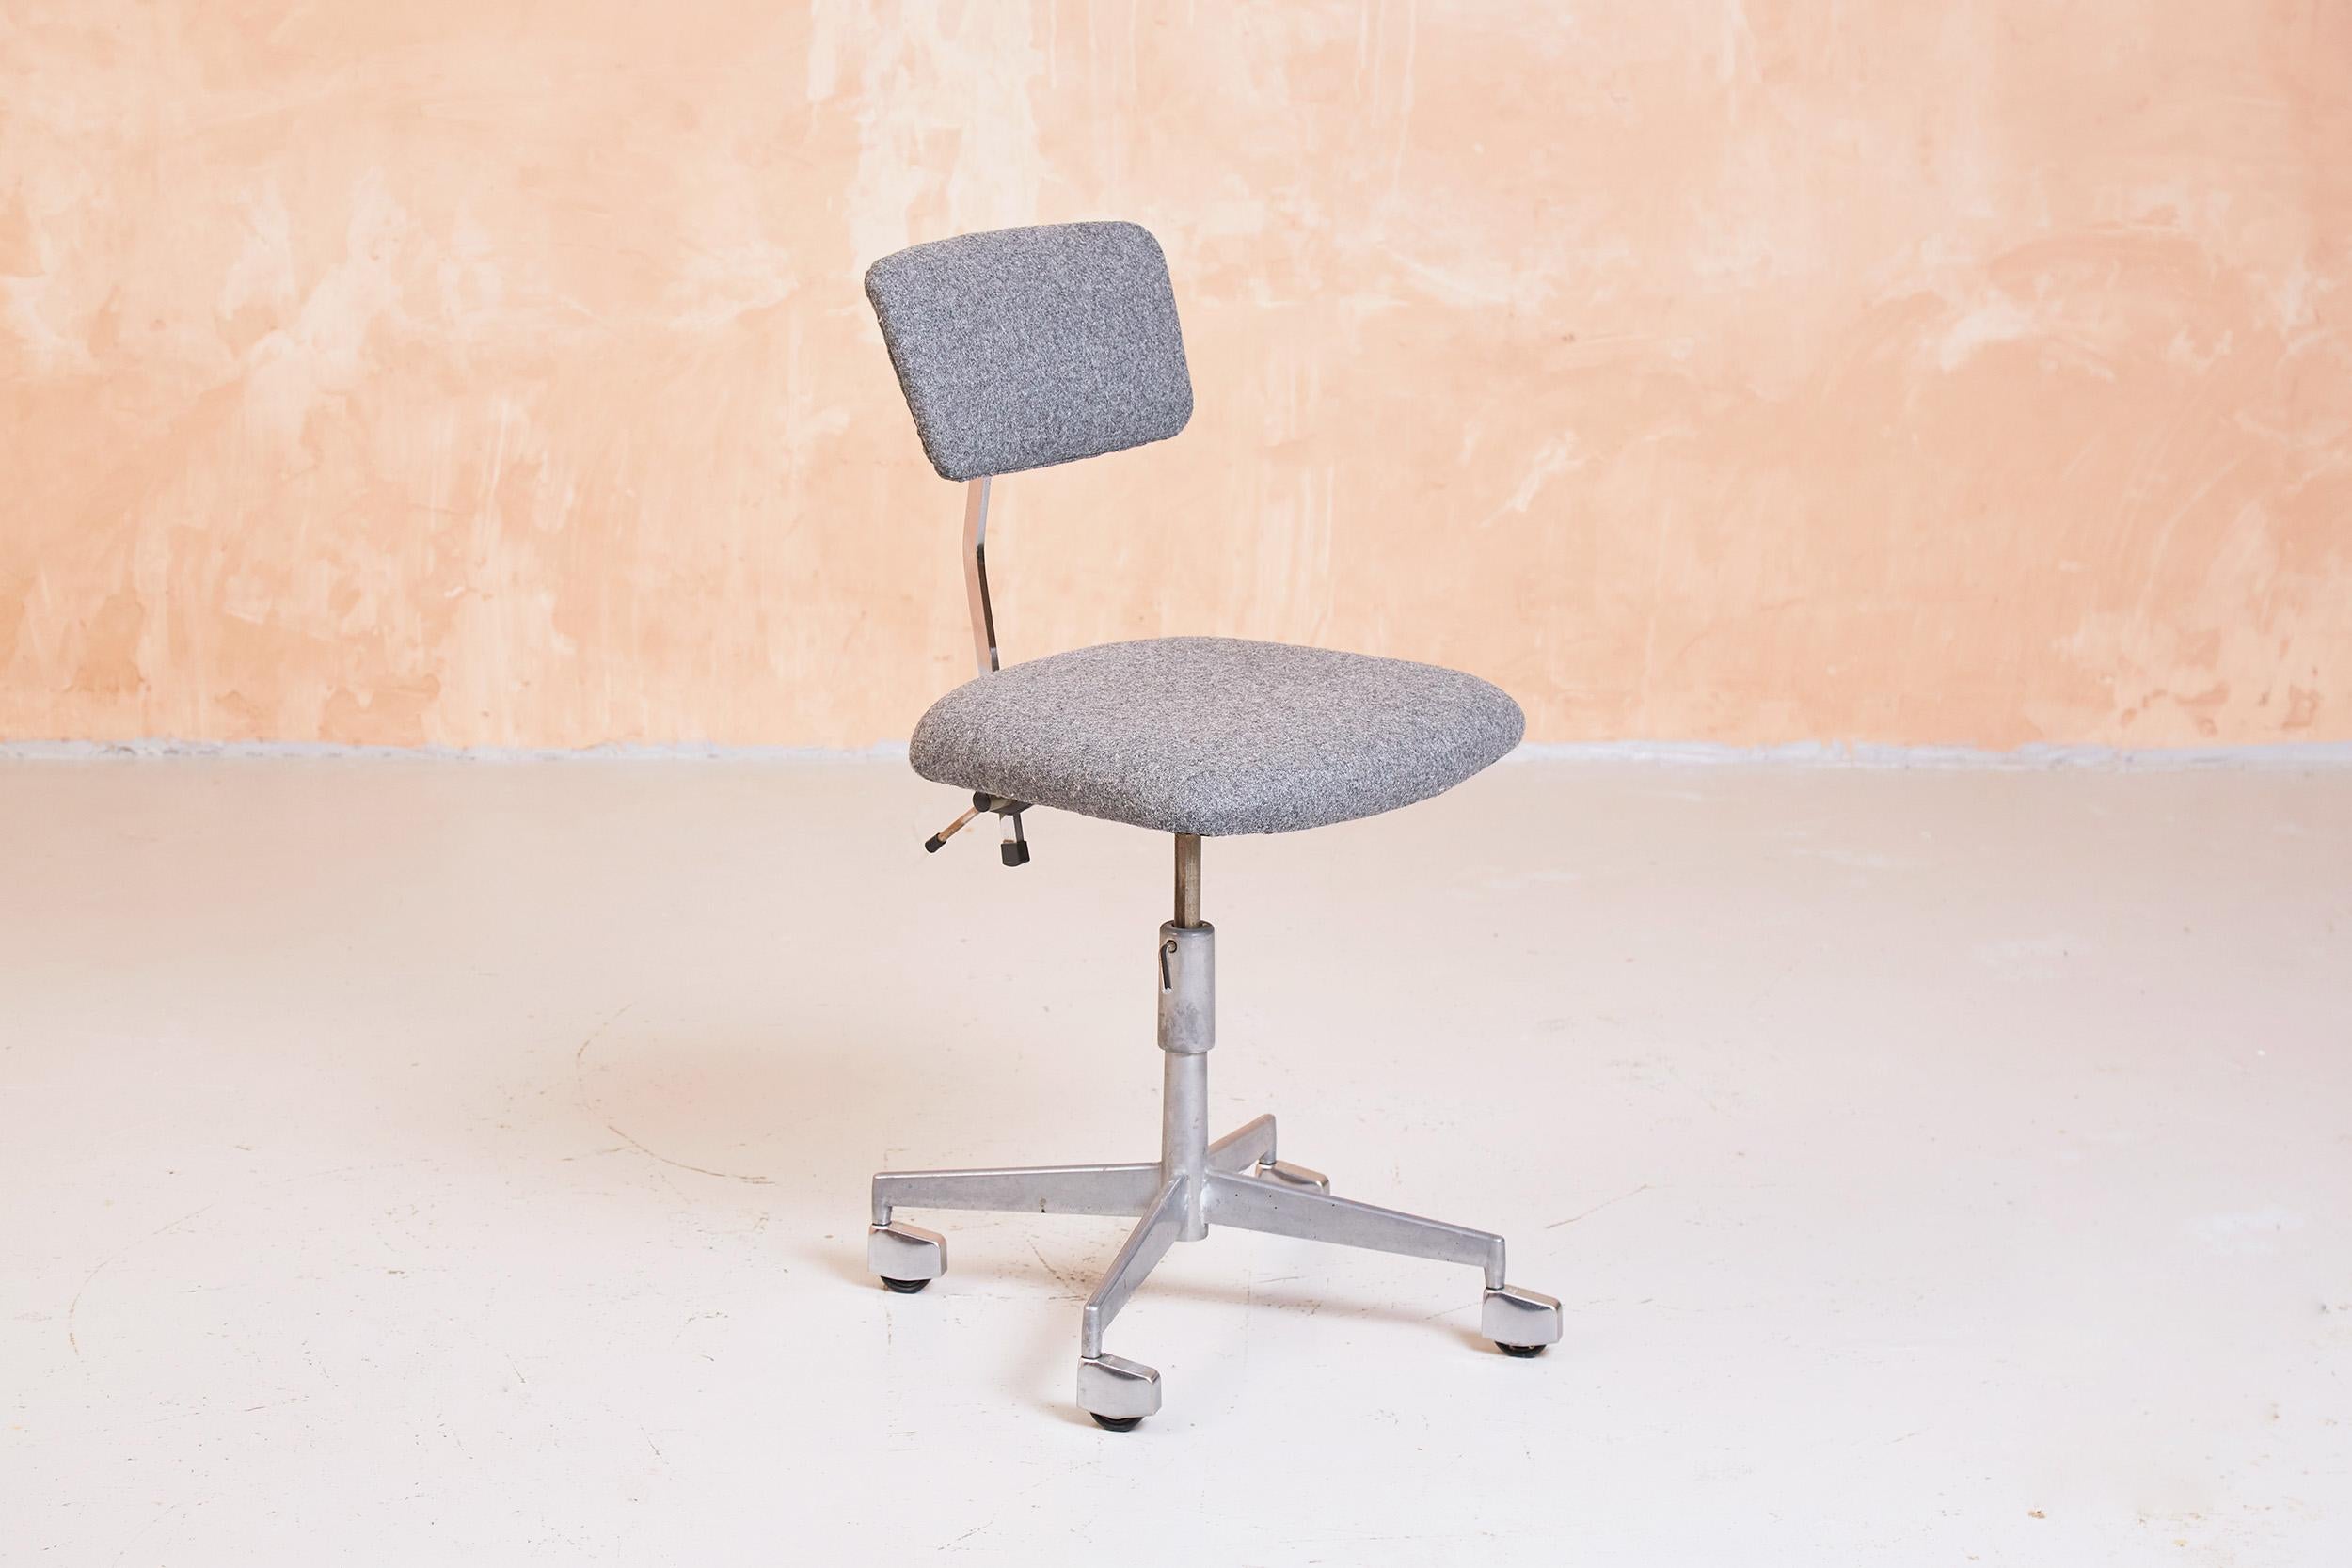 Exemple original de l'emblématique fauteuil pivotant KEVI de Jørgen Rasmussen, conçu au milieu des années 1950 et produit par Labofa.

Le fauteuil est doté d'une assise et d'un dossier réglables en hauteur. L'angle du dossier est également